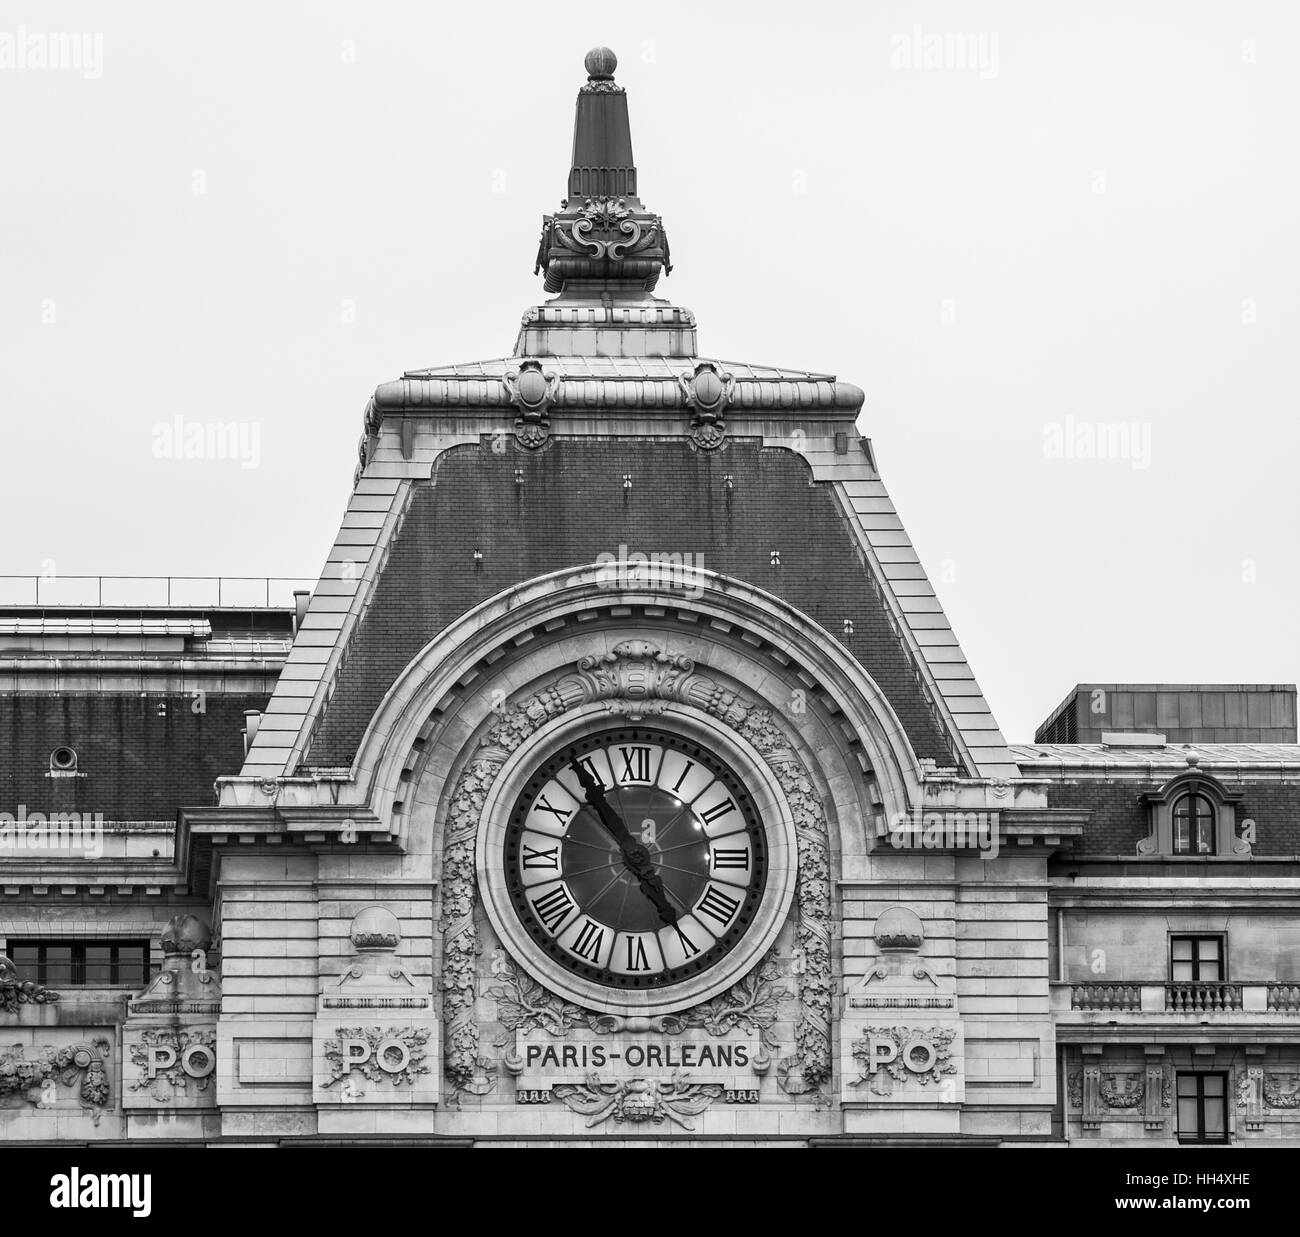 Una immagine in bianco e nero del clock sull'esterno del Musee D'Orsay a Parigi Francia. Foto Stock